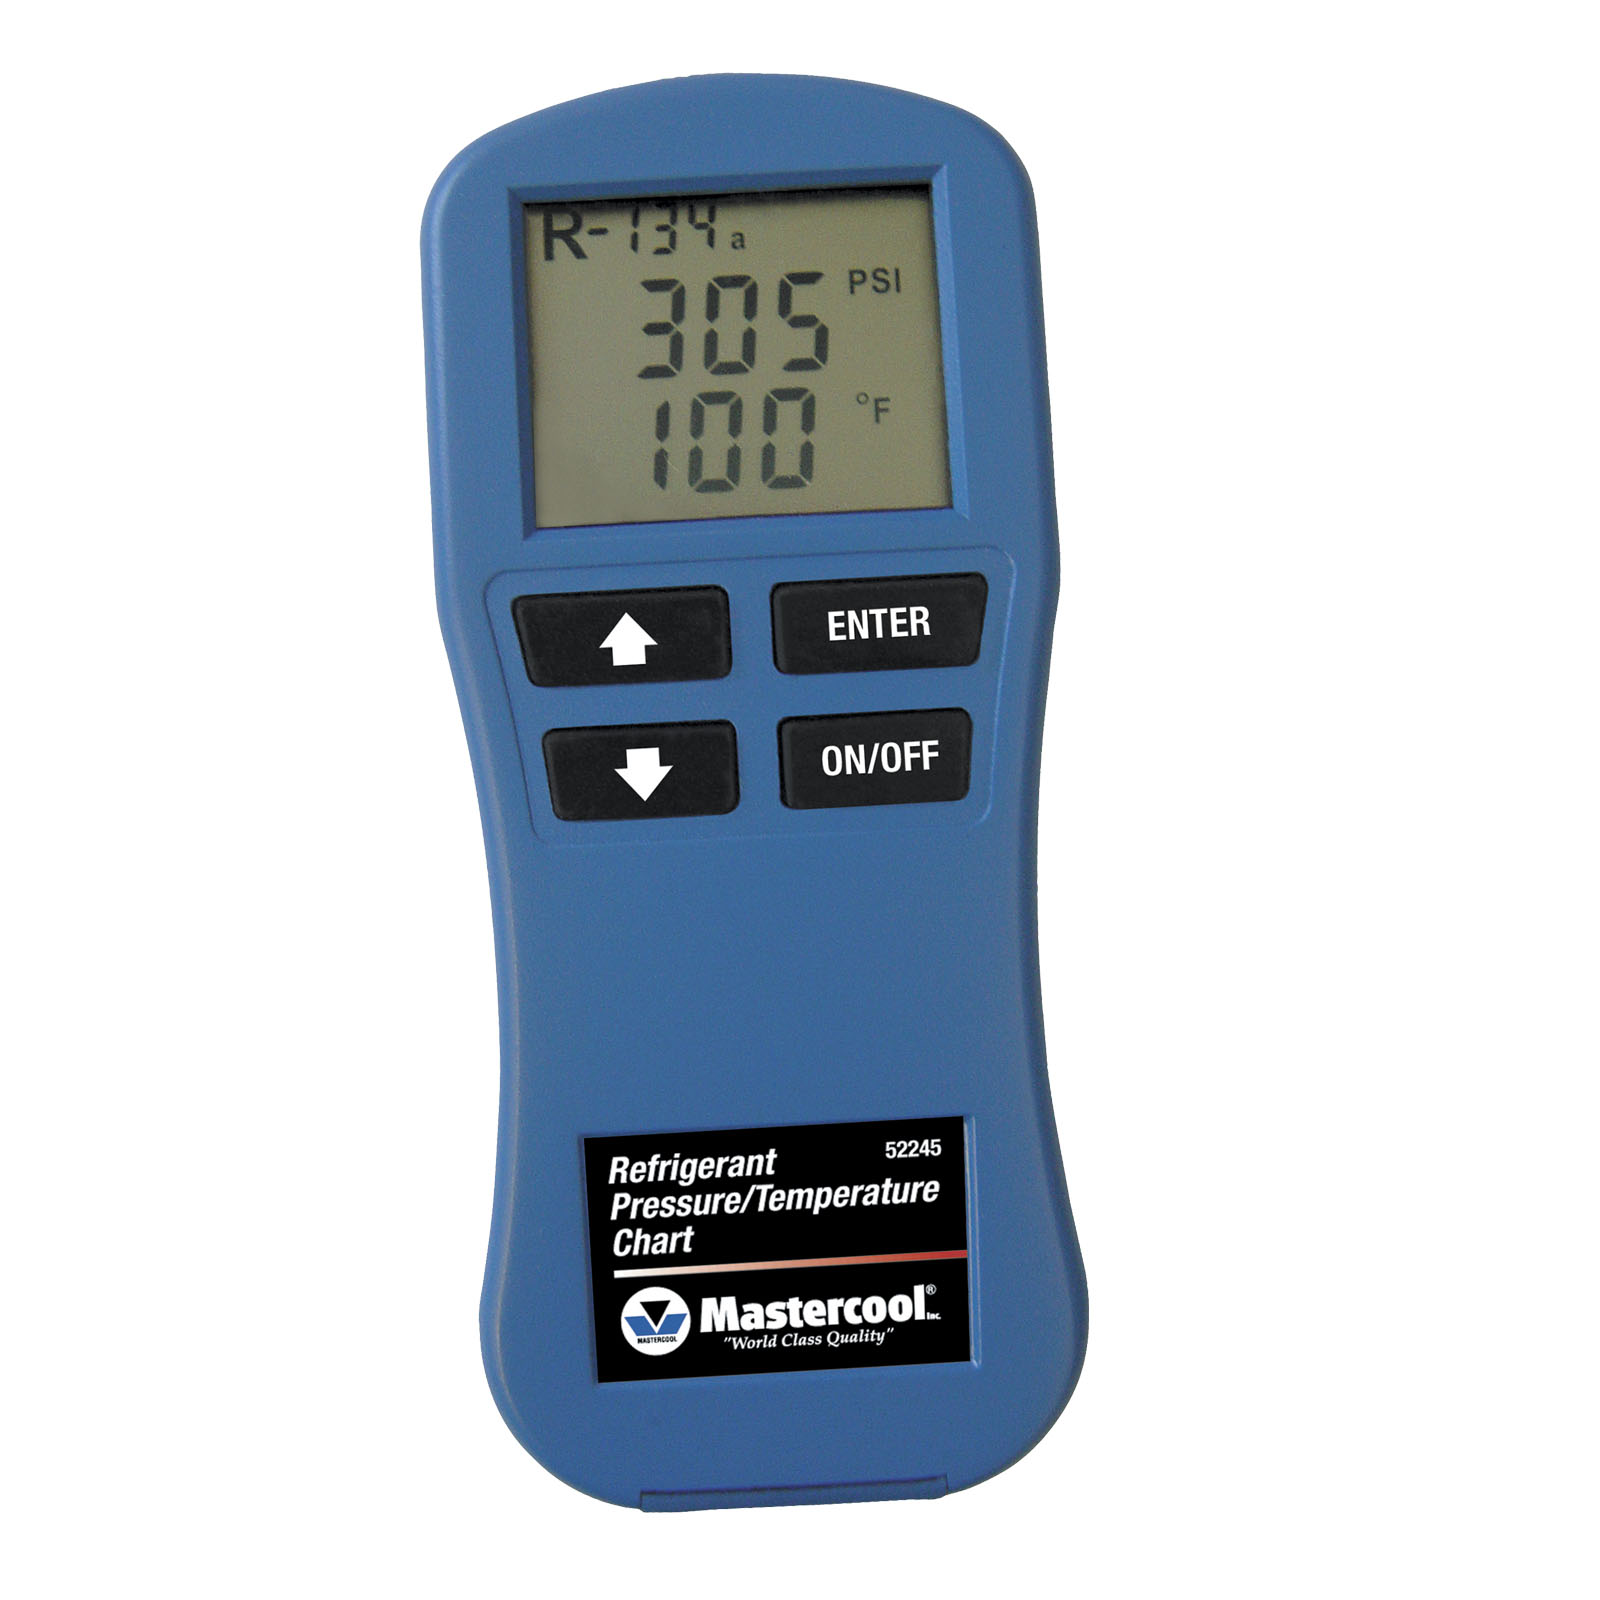 R600a Refrigerant Pressure Temperature Chart